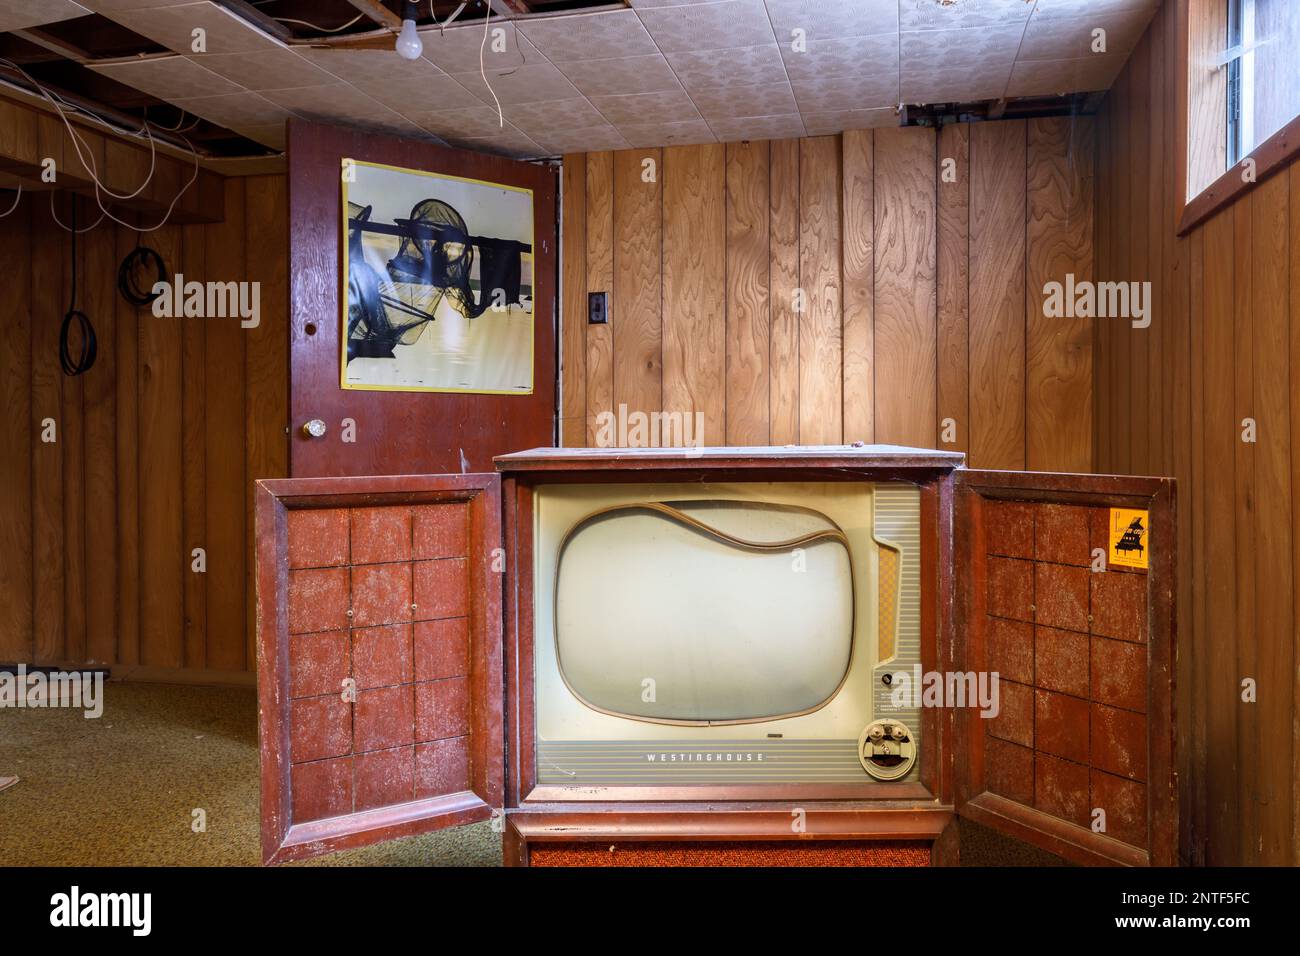 Une console de télévision Westinghouse de 1950s. Cette maison a depuis été démolie Banque D'Images